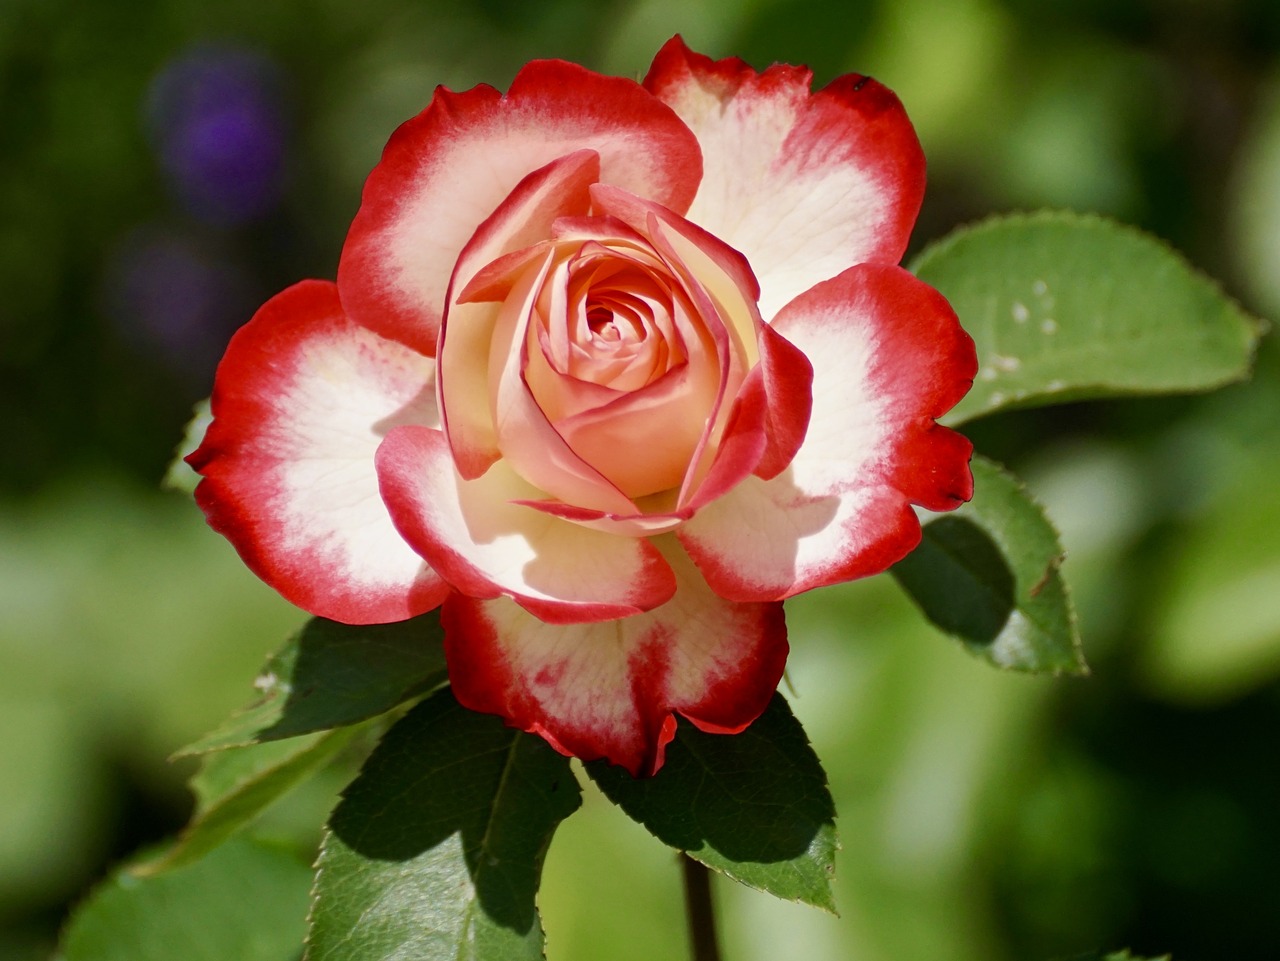 Image - rose blossom bloom flower nature